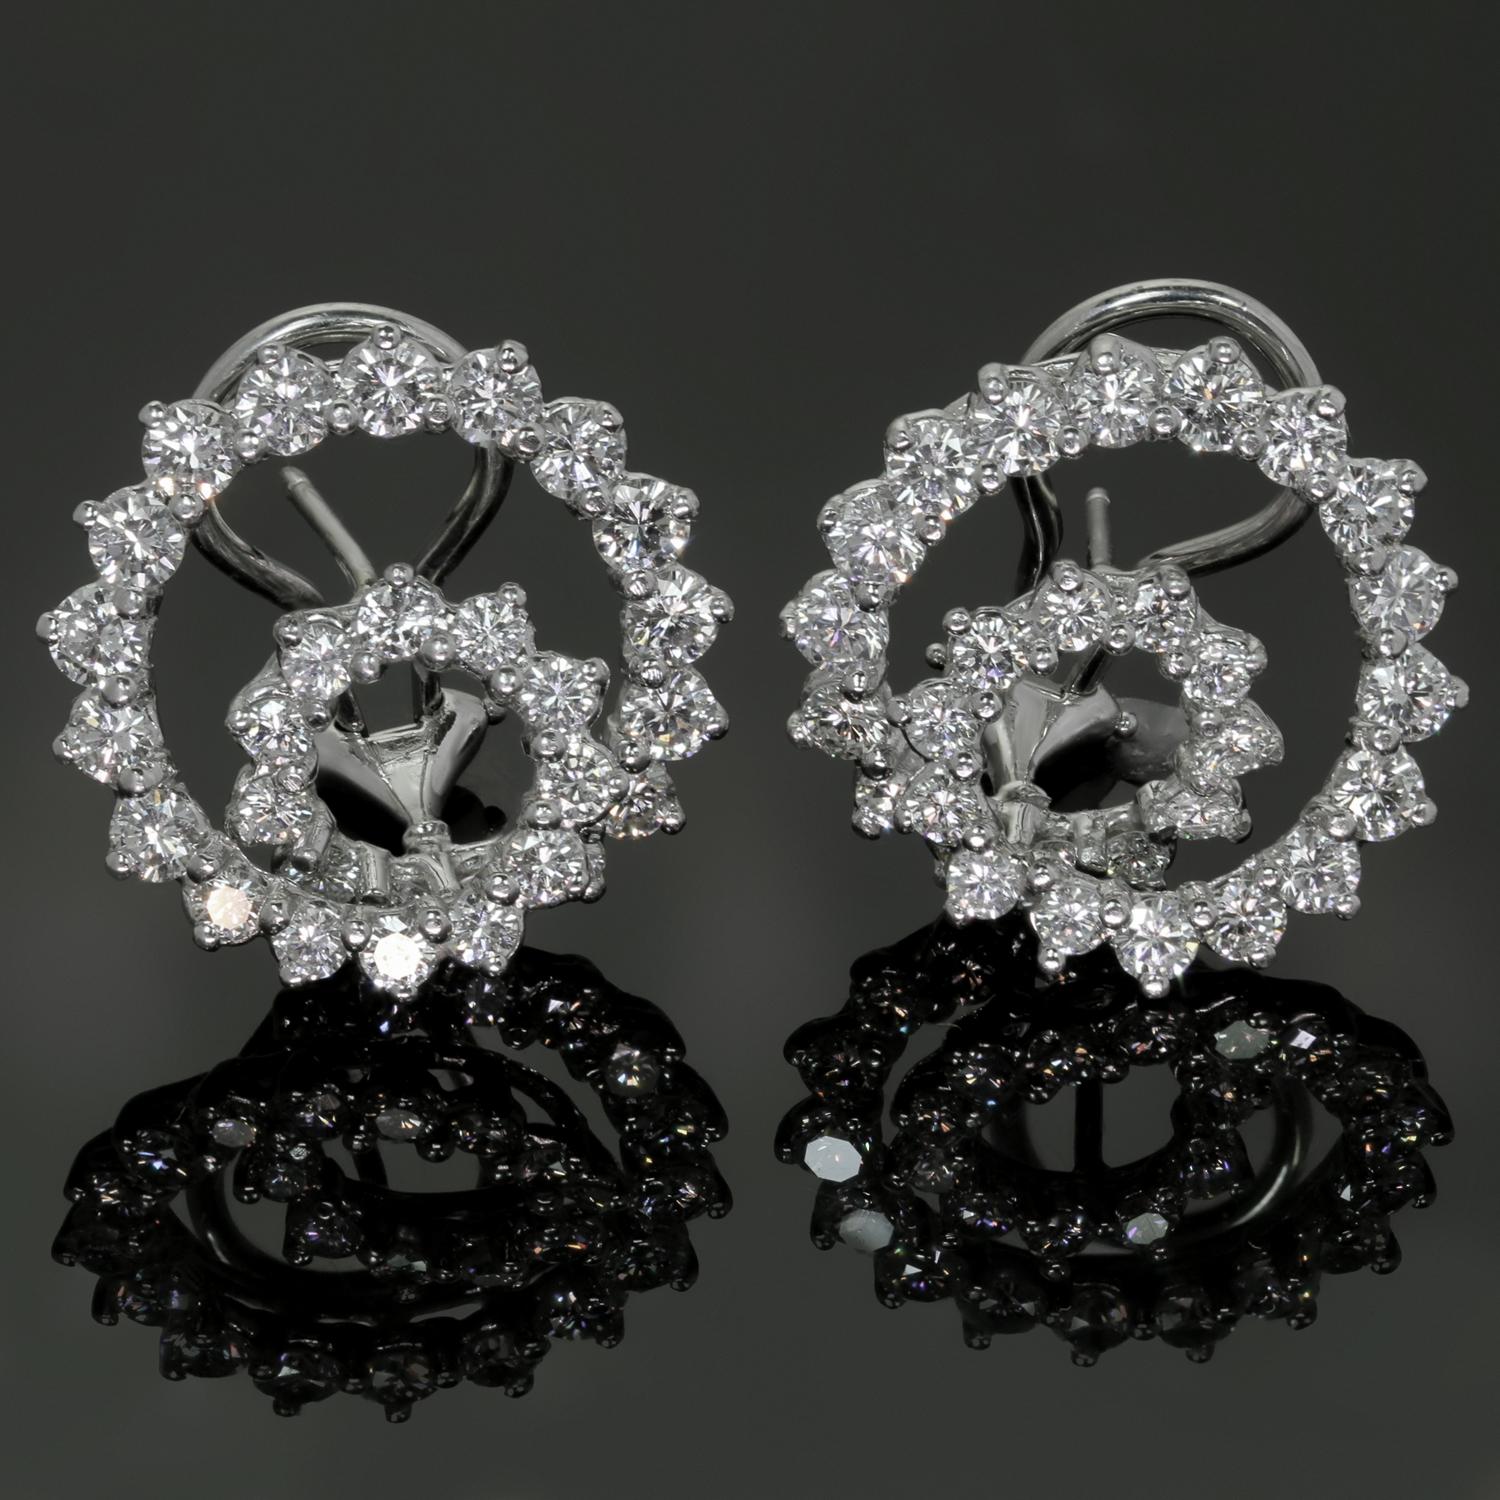 Diese wunderschönen Ohrringe von Angela Cummings sind in einem spiralförmigen Design aus Platin gefertigt und mit ca. 58 runden Diamanten im Brillantschliff mit einem geschätzten Gewicht von 3,8 bis 4,0 Karat besetzt. Diese sind das große Modell.